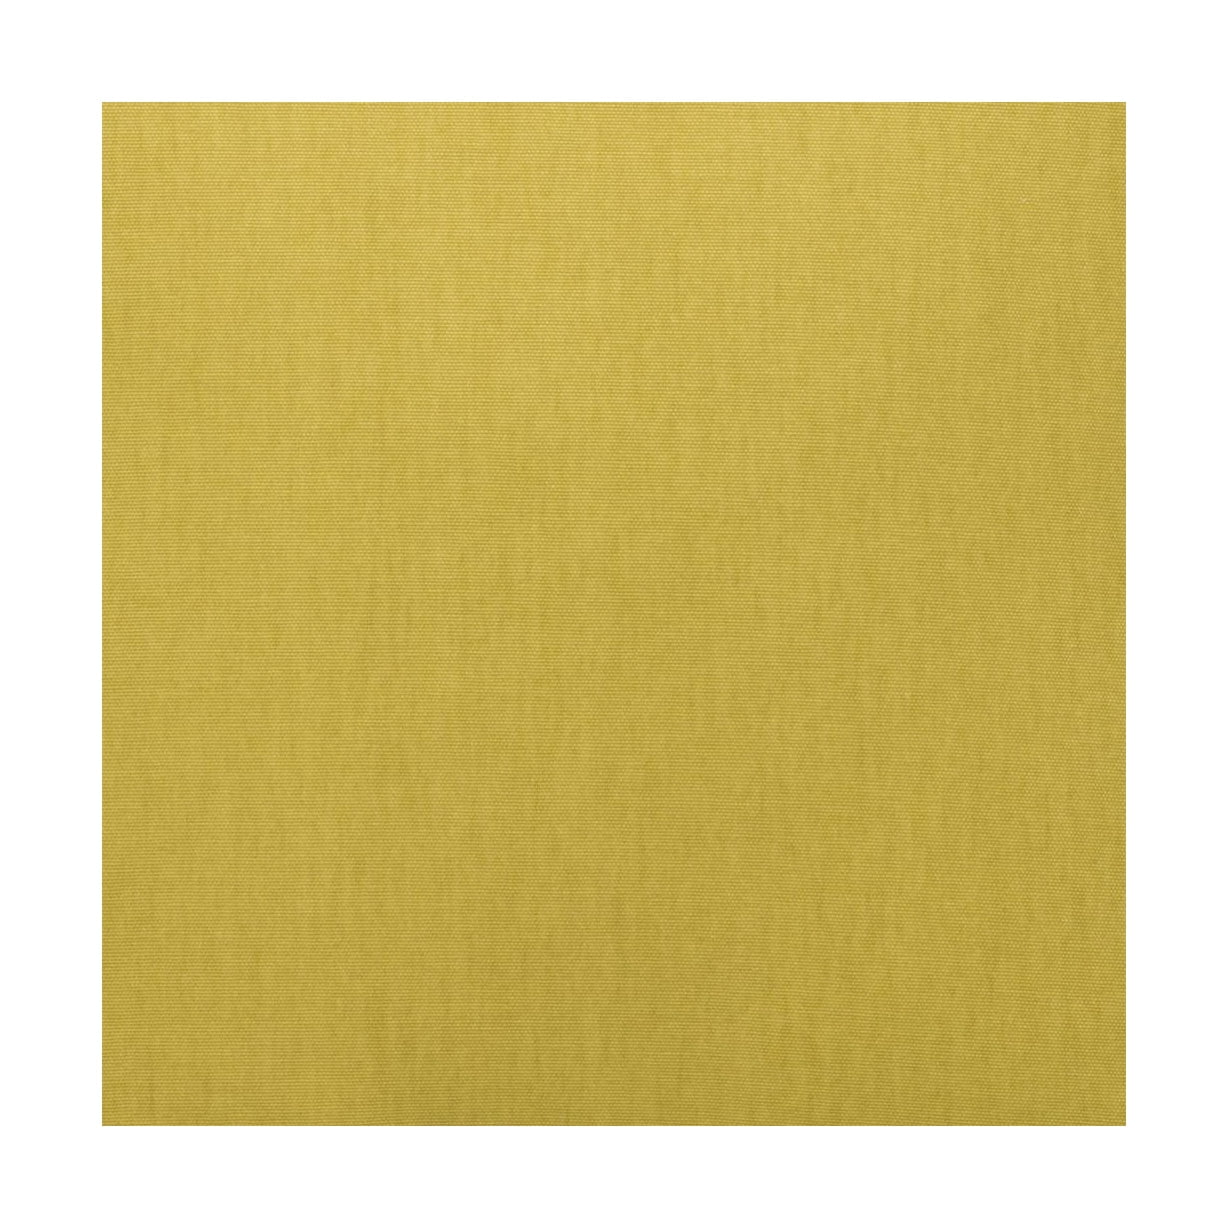 Spira Klotz -stofbreedte 150 cm (prijs per meter), geel